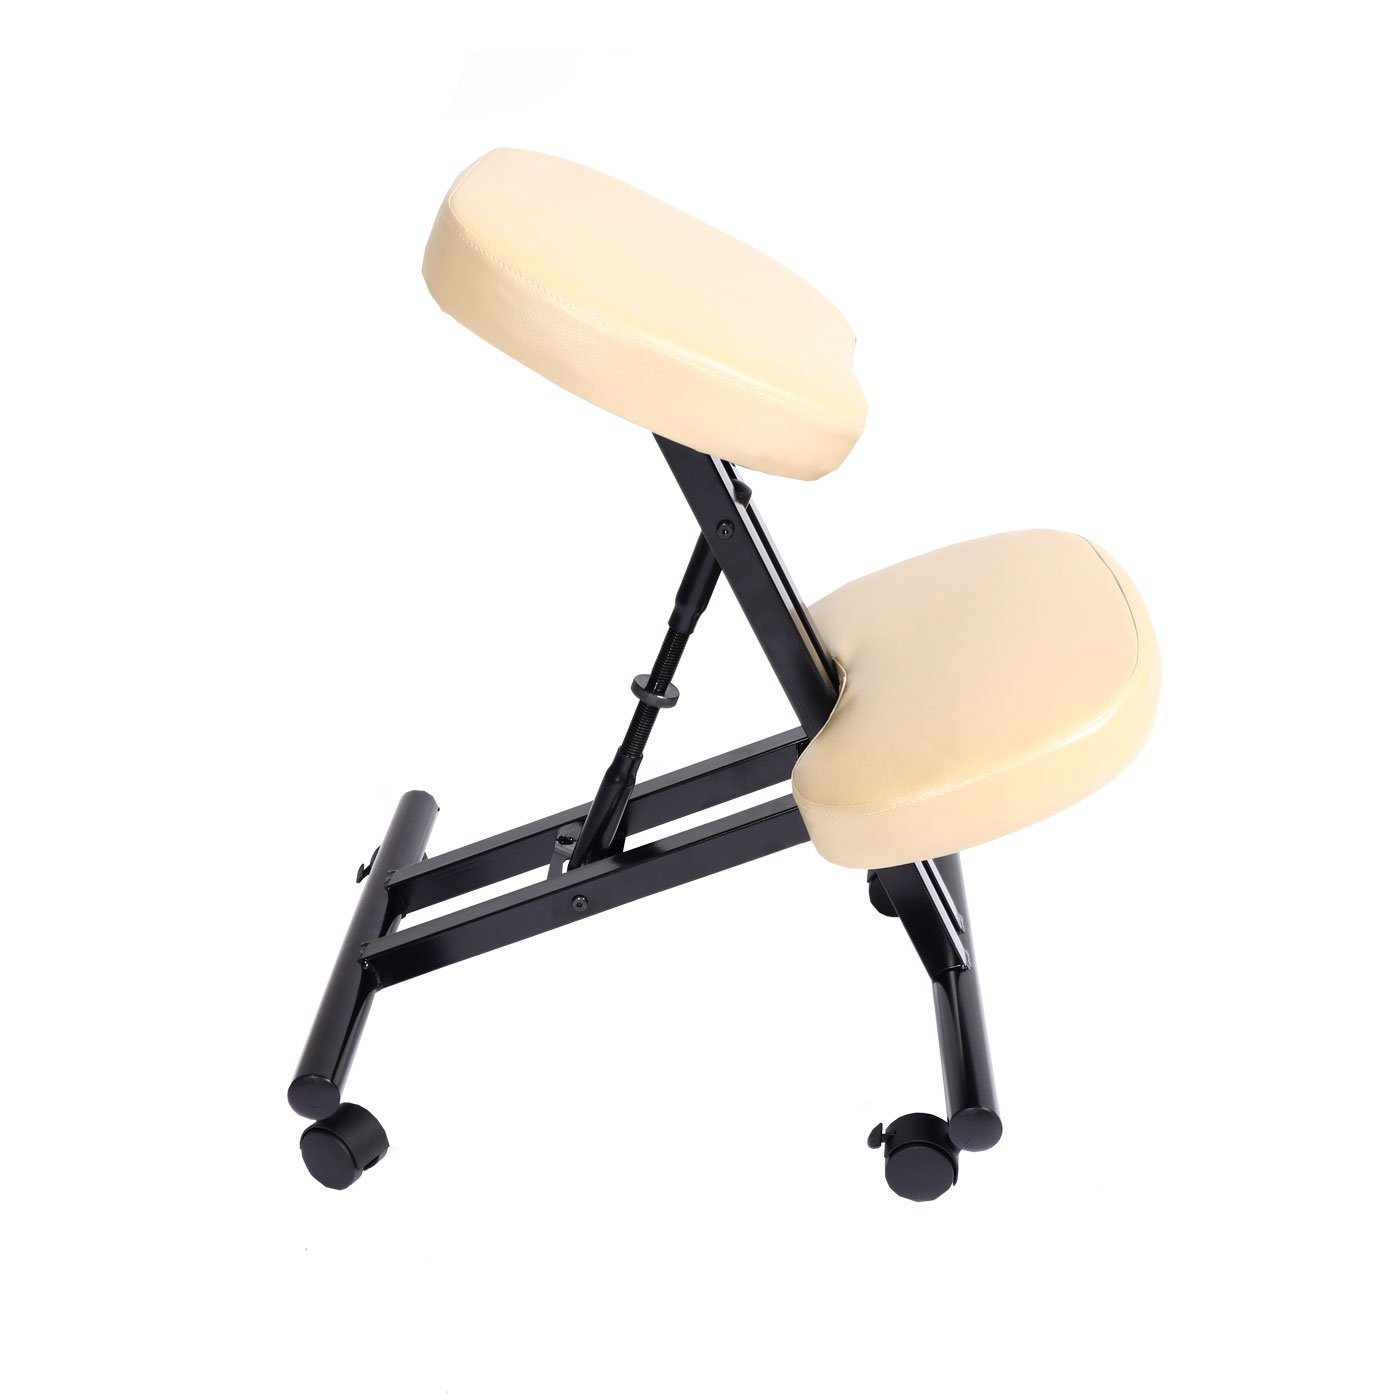 und gepolsterte MCW Sitzfläche, creme-beige Weich Knie- Schreibtischstuhl MCW-E10, Sitzfläche Höhenverstellbare